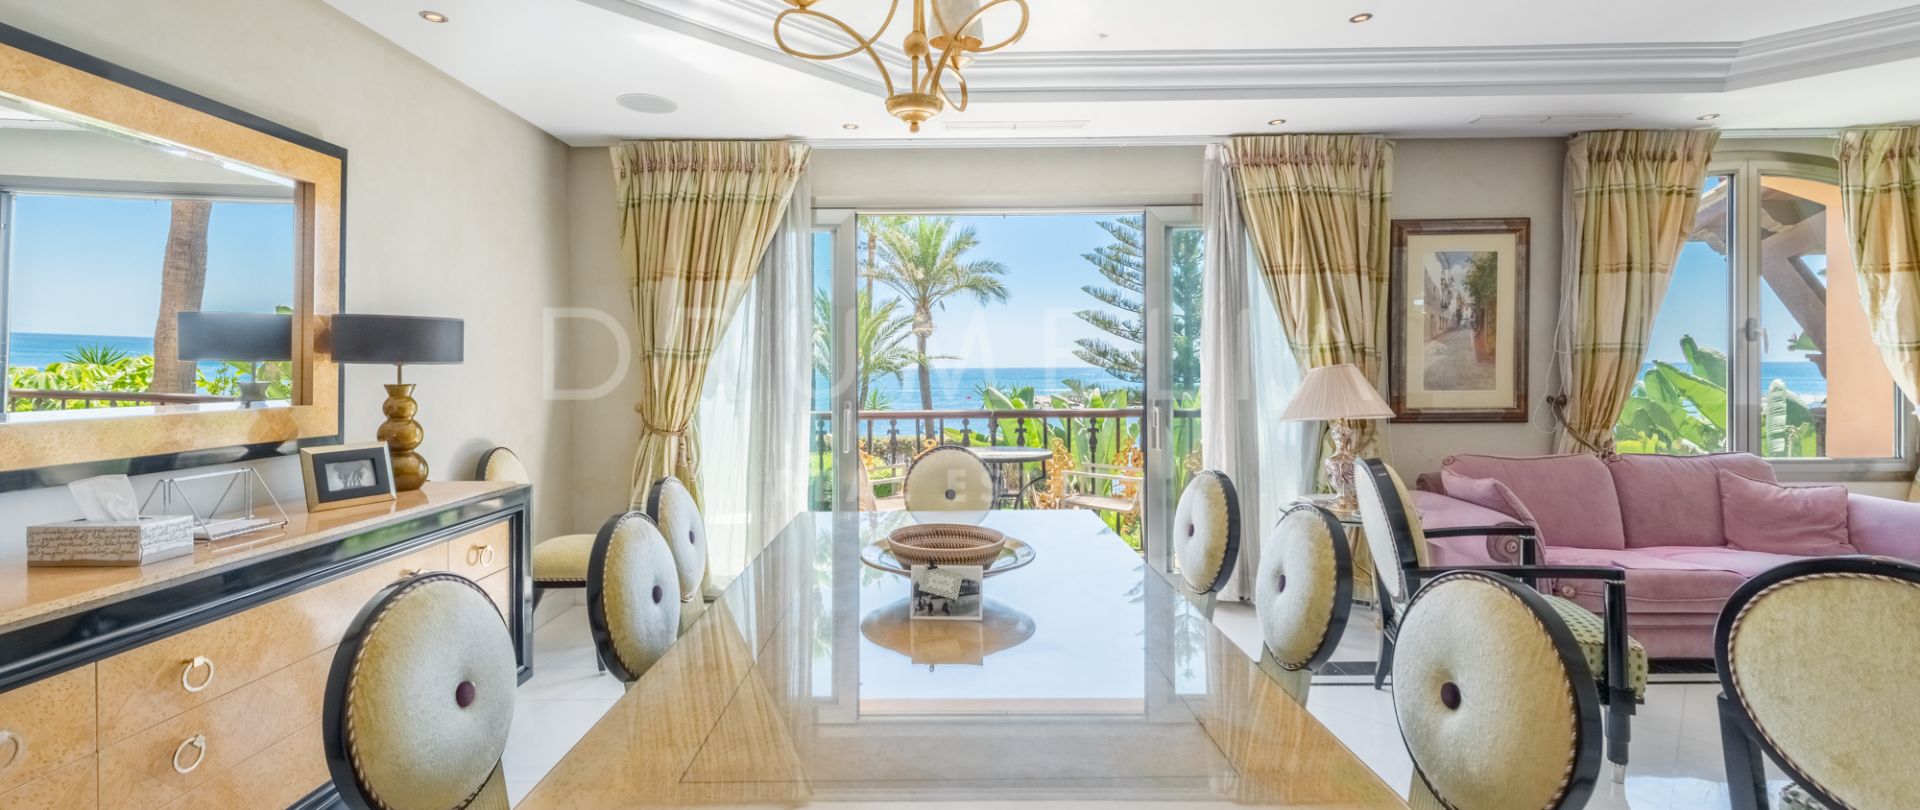 Luksusowy apartament przy plaży z niesamowitym widokiem na morze w Puerto Banus, Marbella